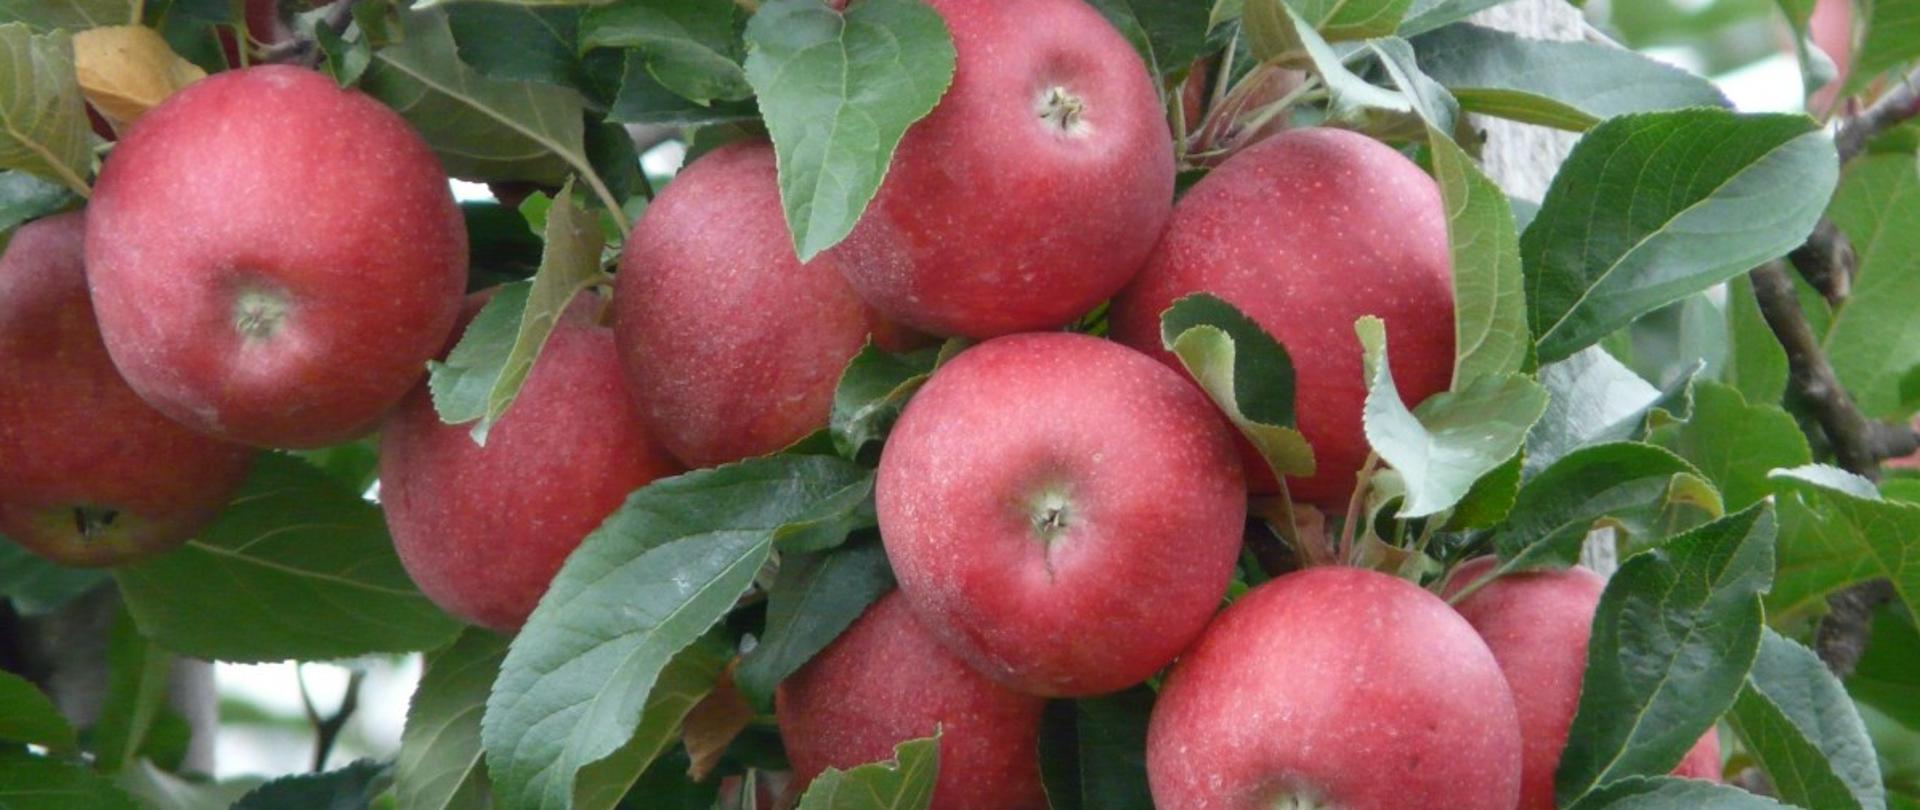 Czerwone jabłka wśród zielonych liści